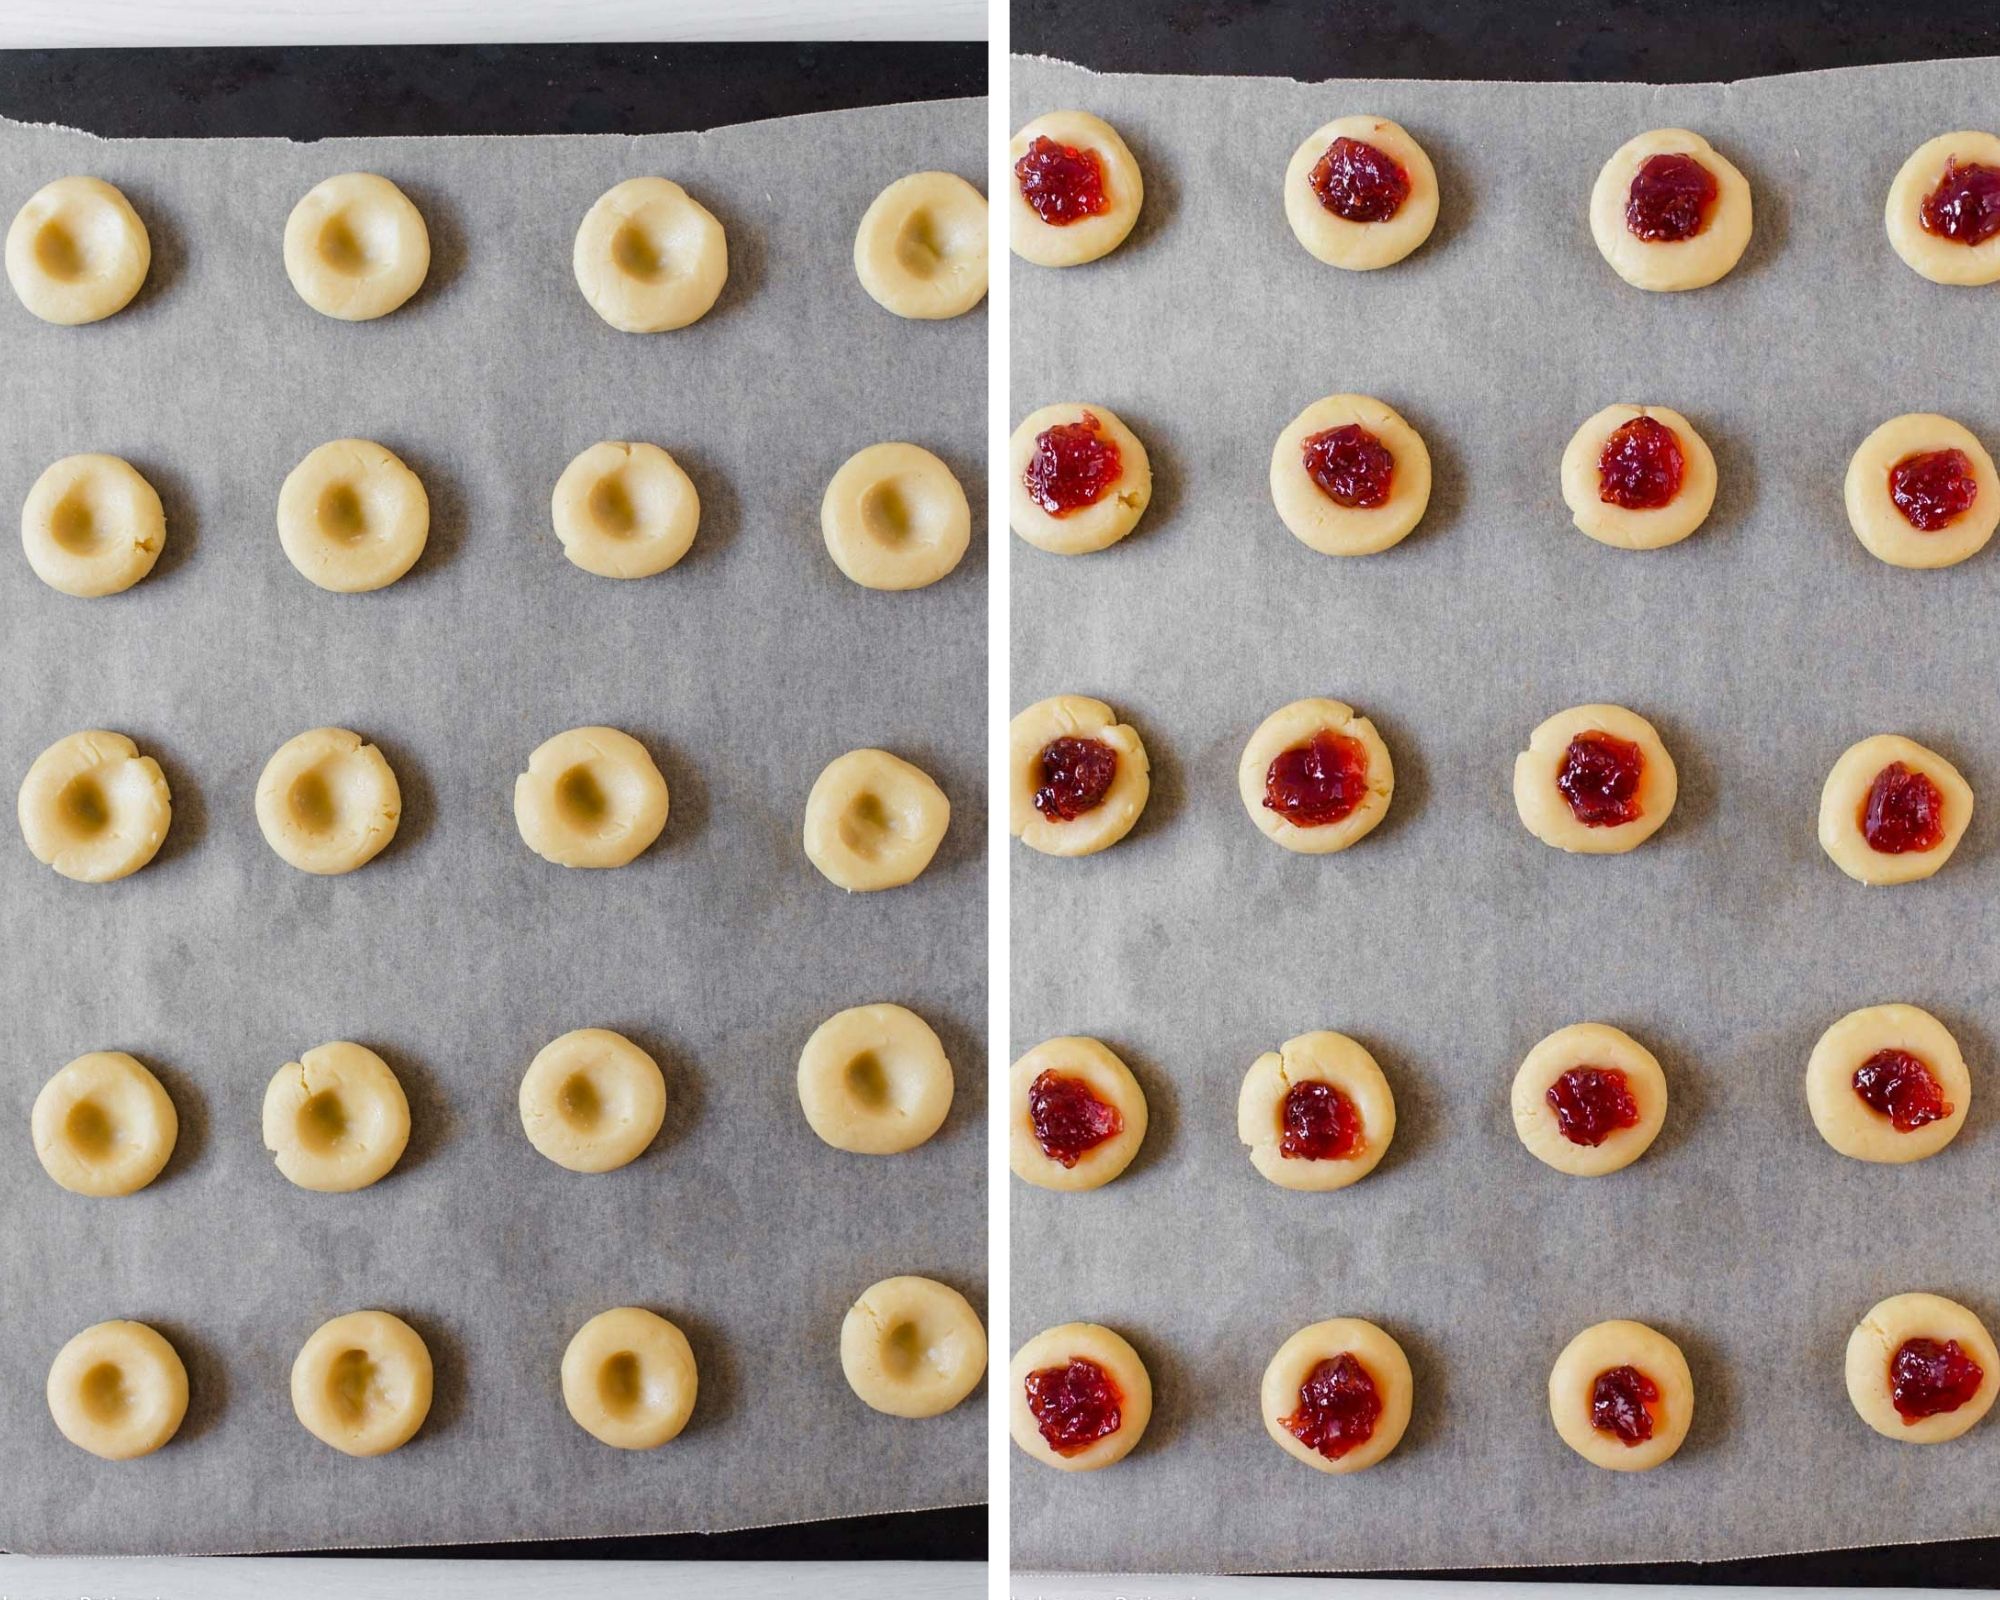 Cookies on baking sheet before baking